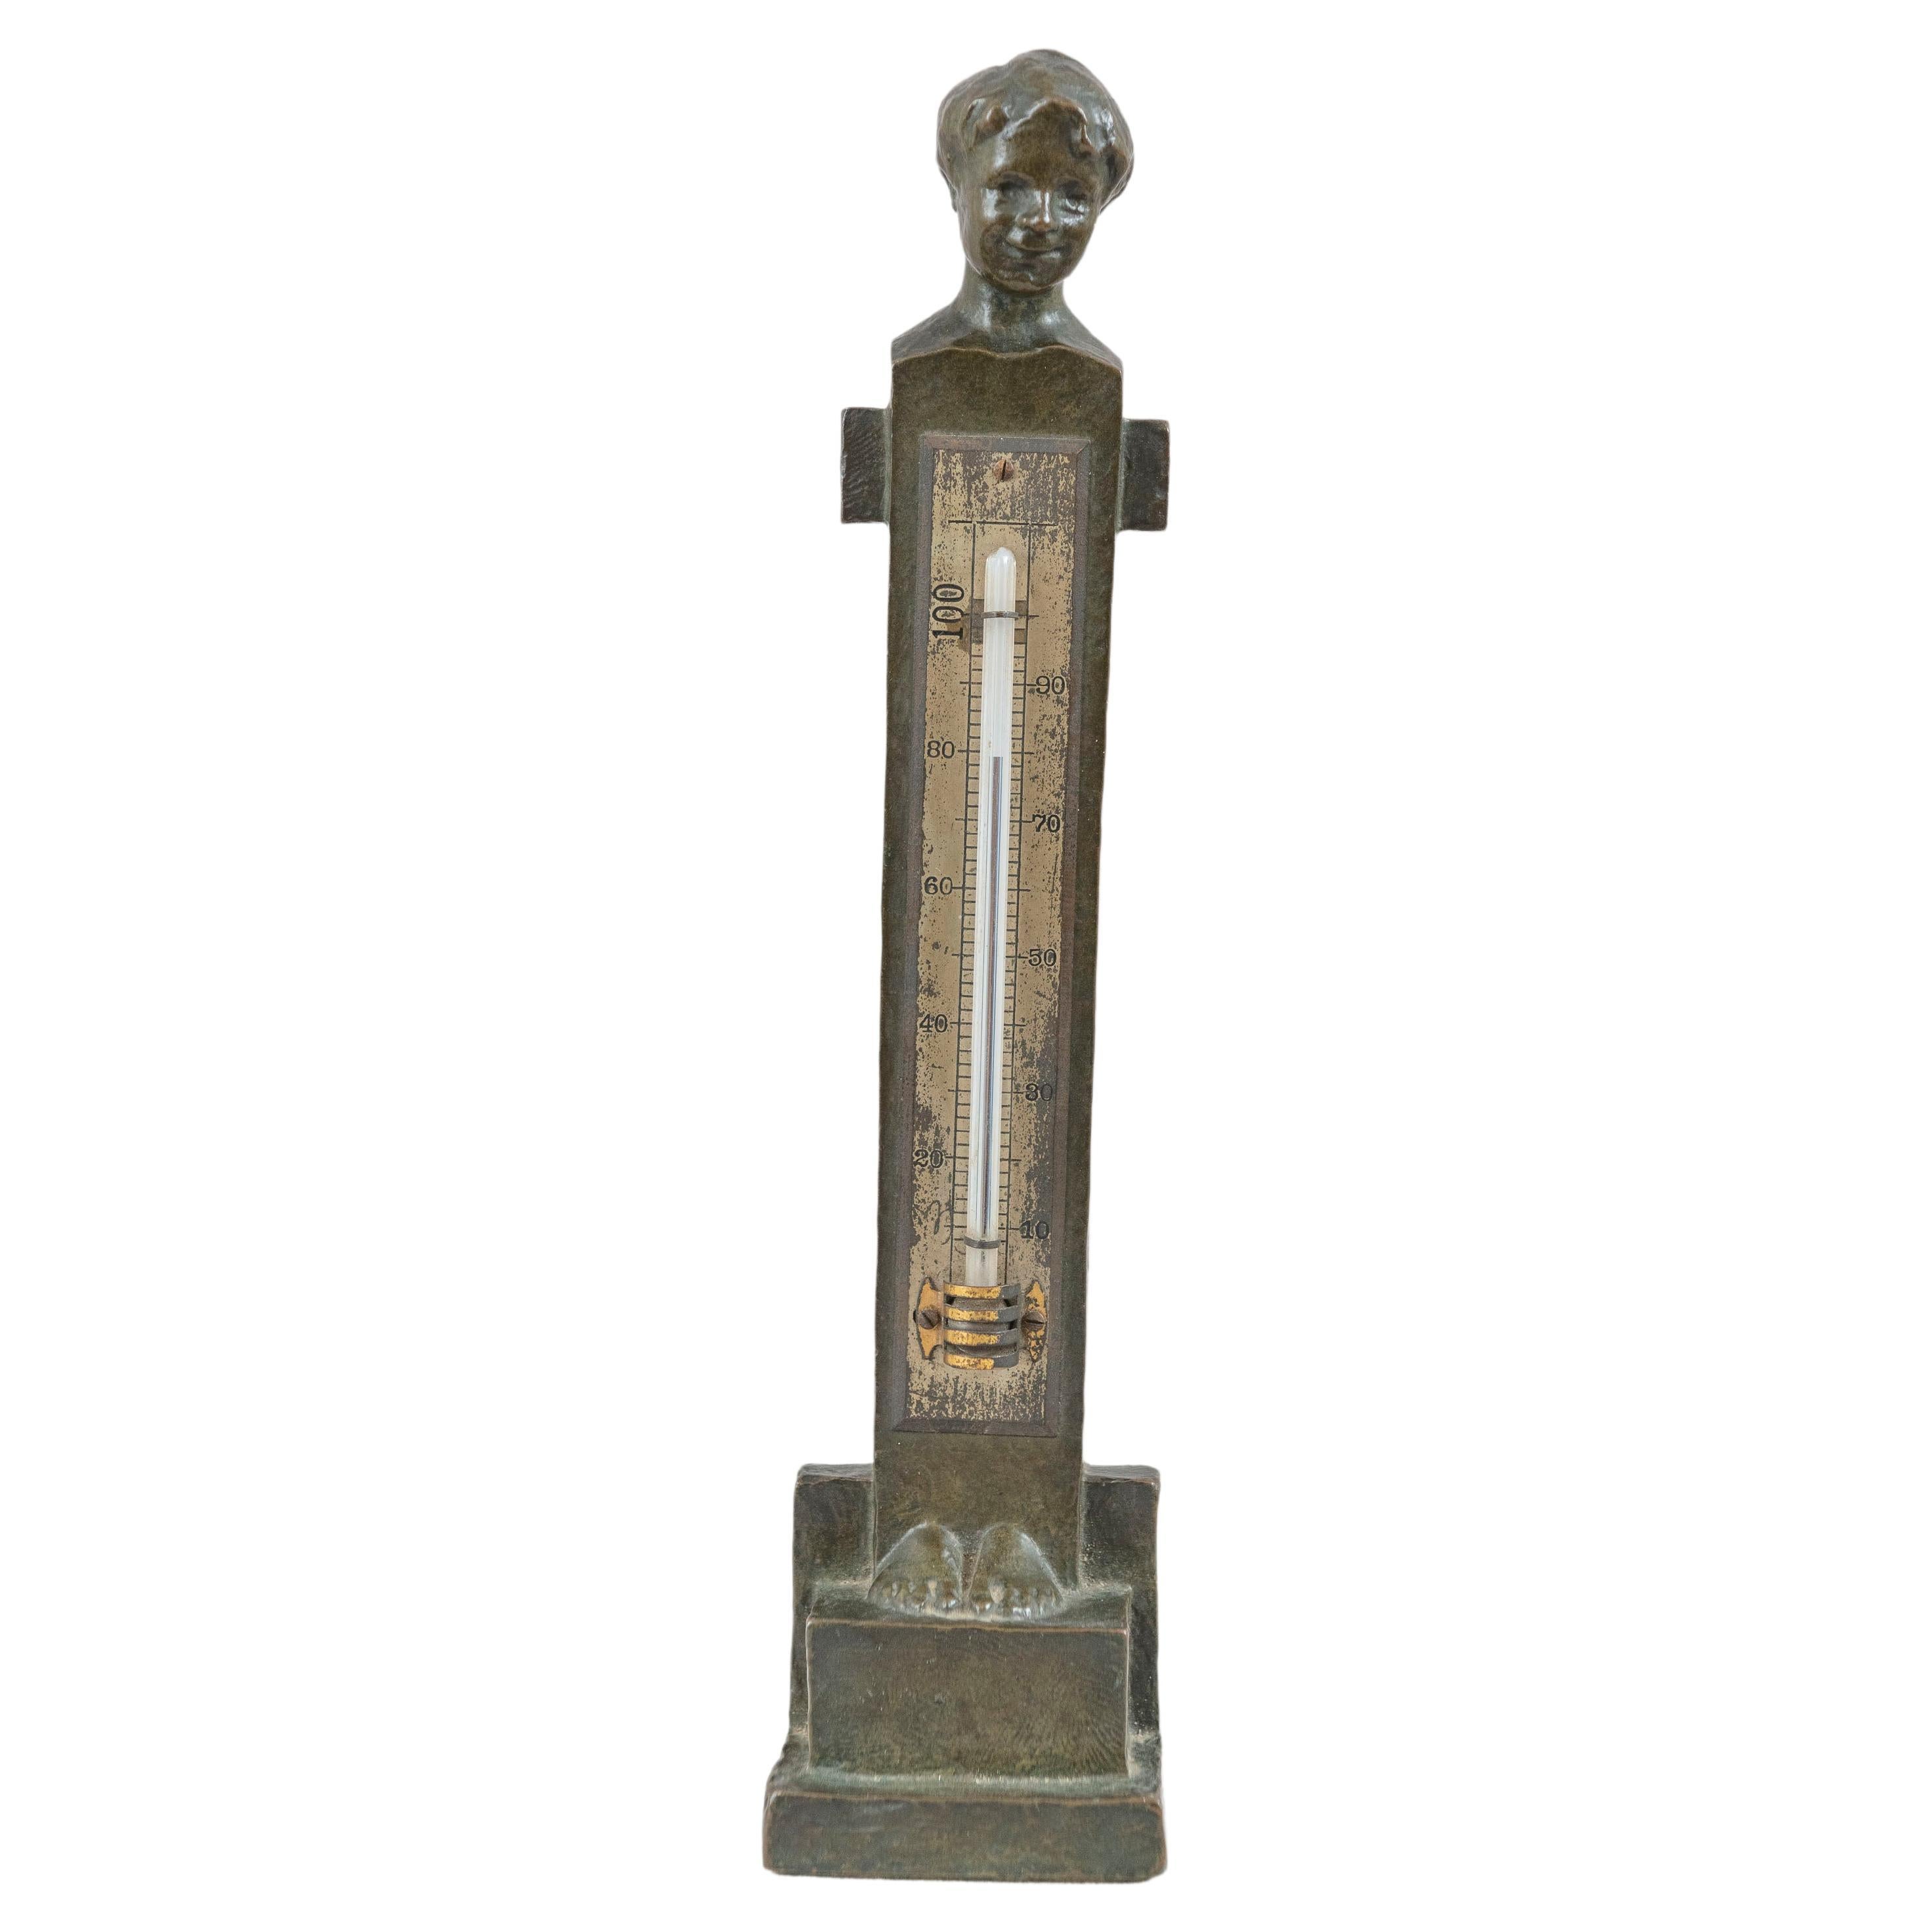 Skulpturaler Thermometer aus Bronze, langgewachsene Dame, vom Künstler signiert und datiert 1911